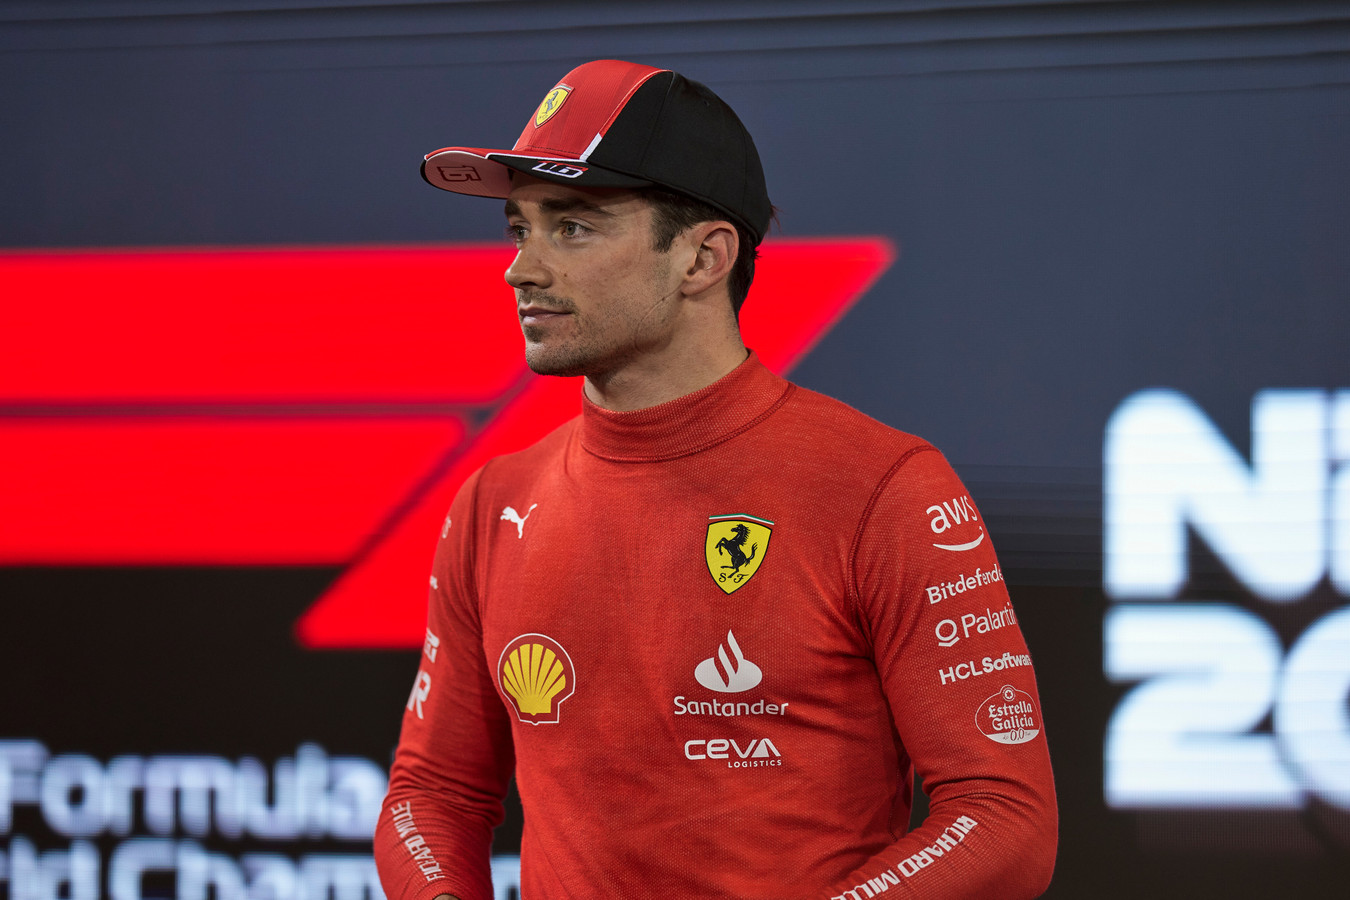 C. Leclercas paneigė kalbas apie pradėtas derybas su „Ferrari“